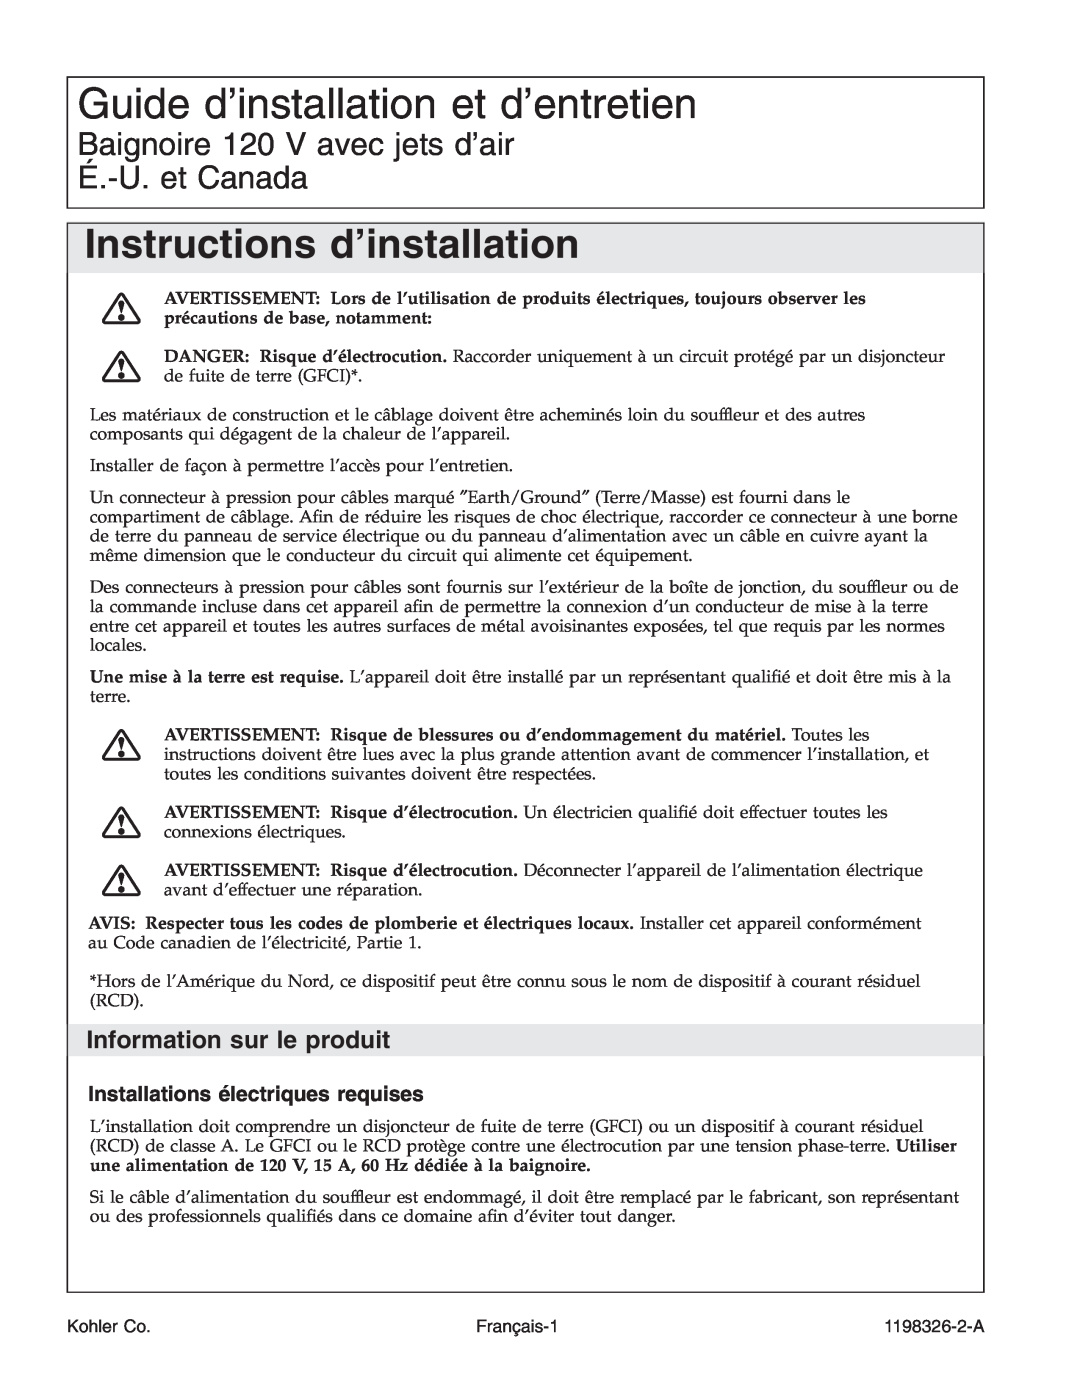 Kohler 1198326-2-A Guide d’installation et d’entretien, Instructions d’installation, Information sur le produit, Kohler Co 